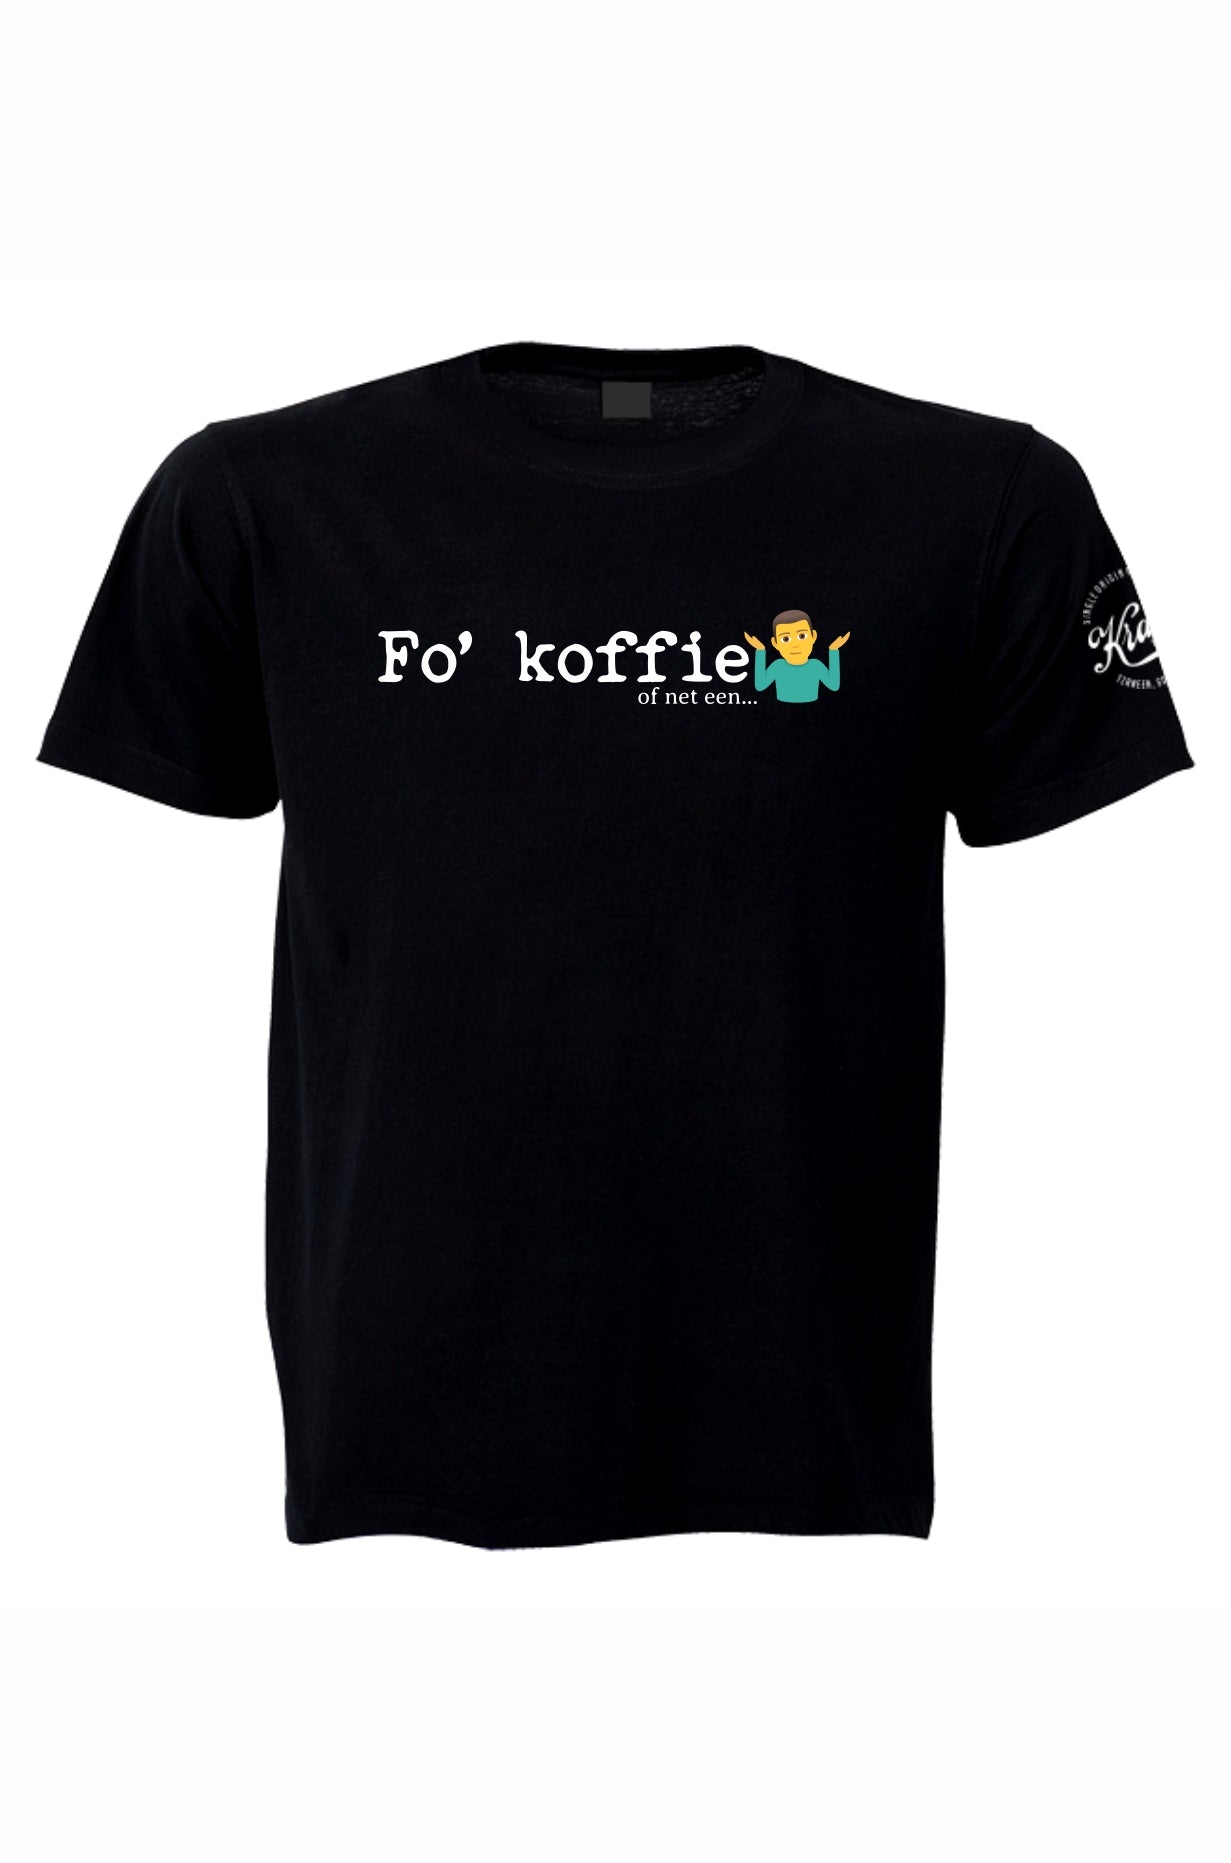 Krabbefontein Fokoffie T-Shirt